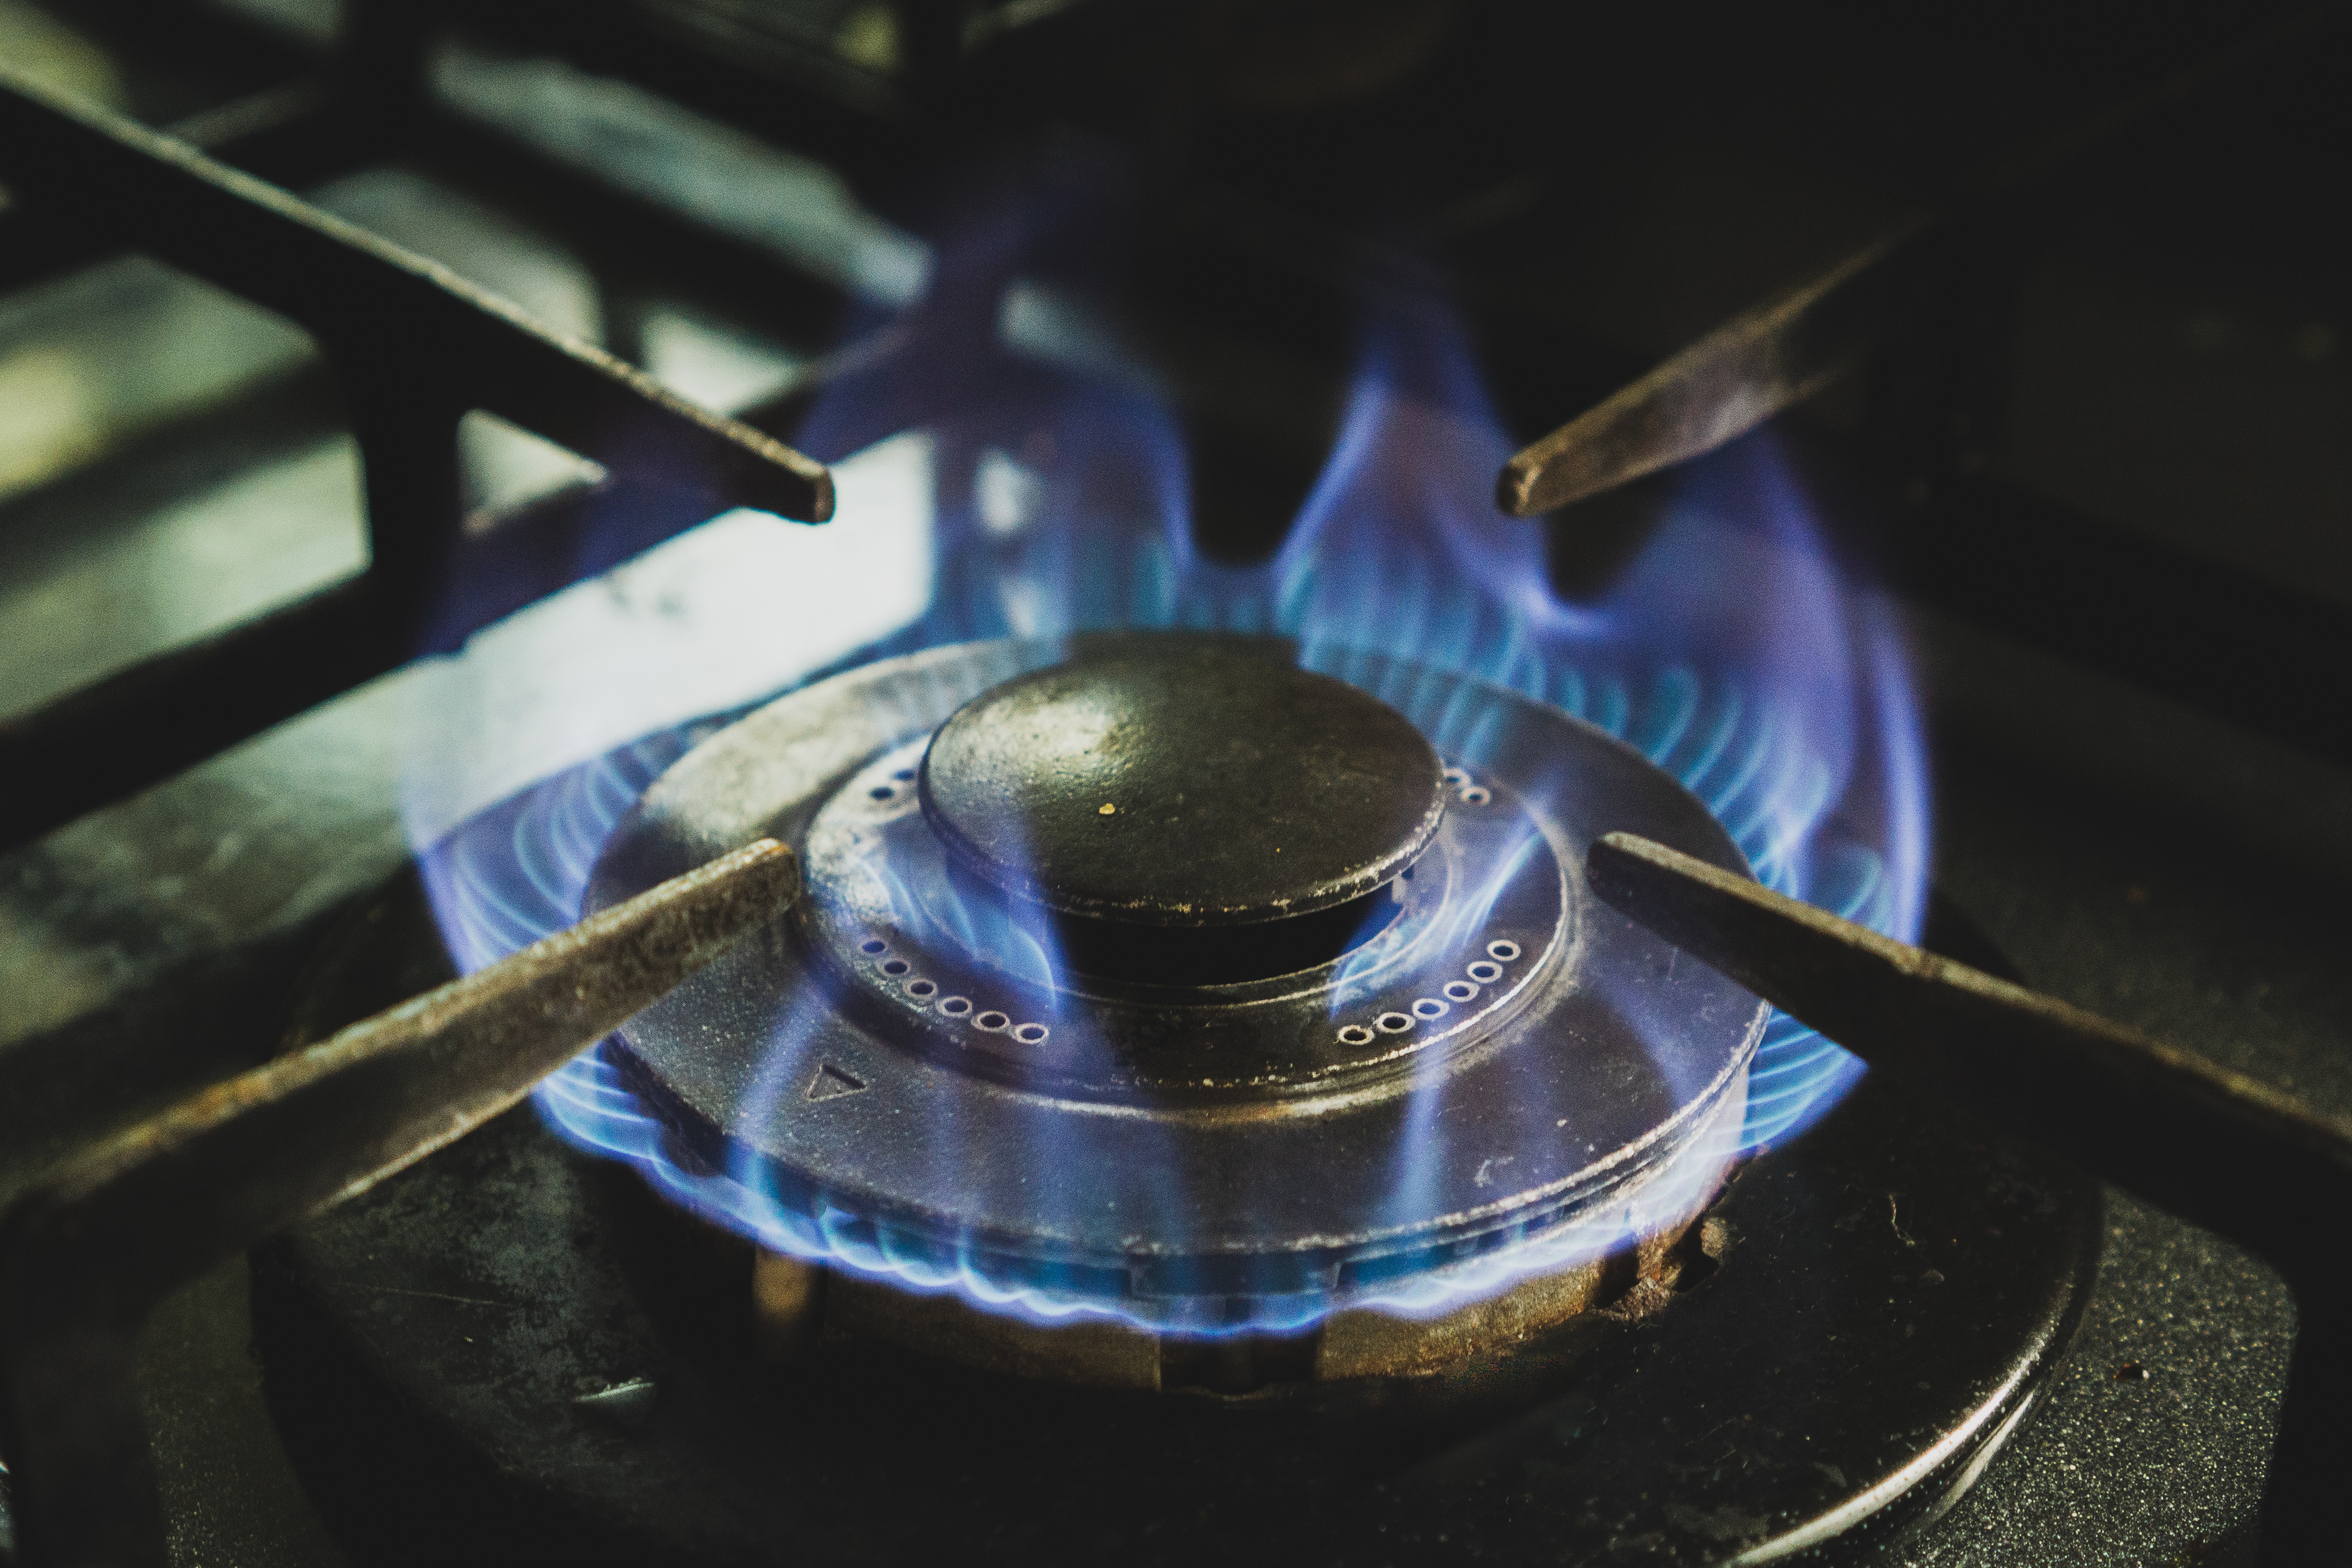 ▷ Cocina a gas vs cocina eléctrica: ¿Cuál es mejor?